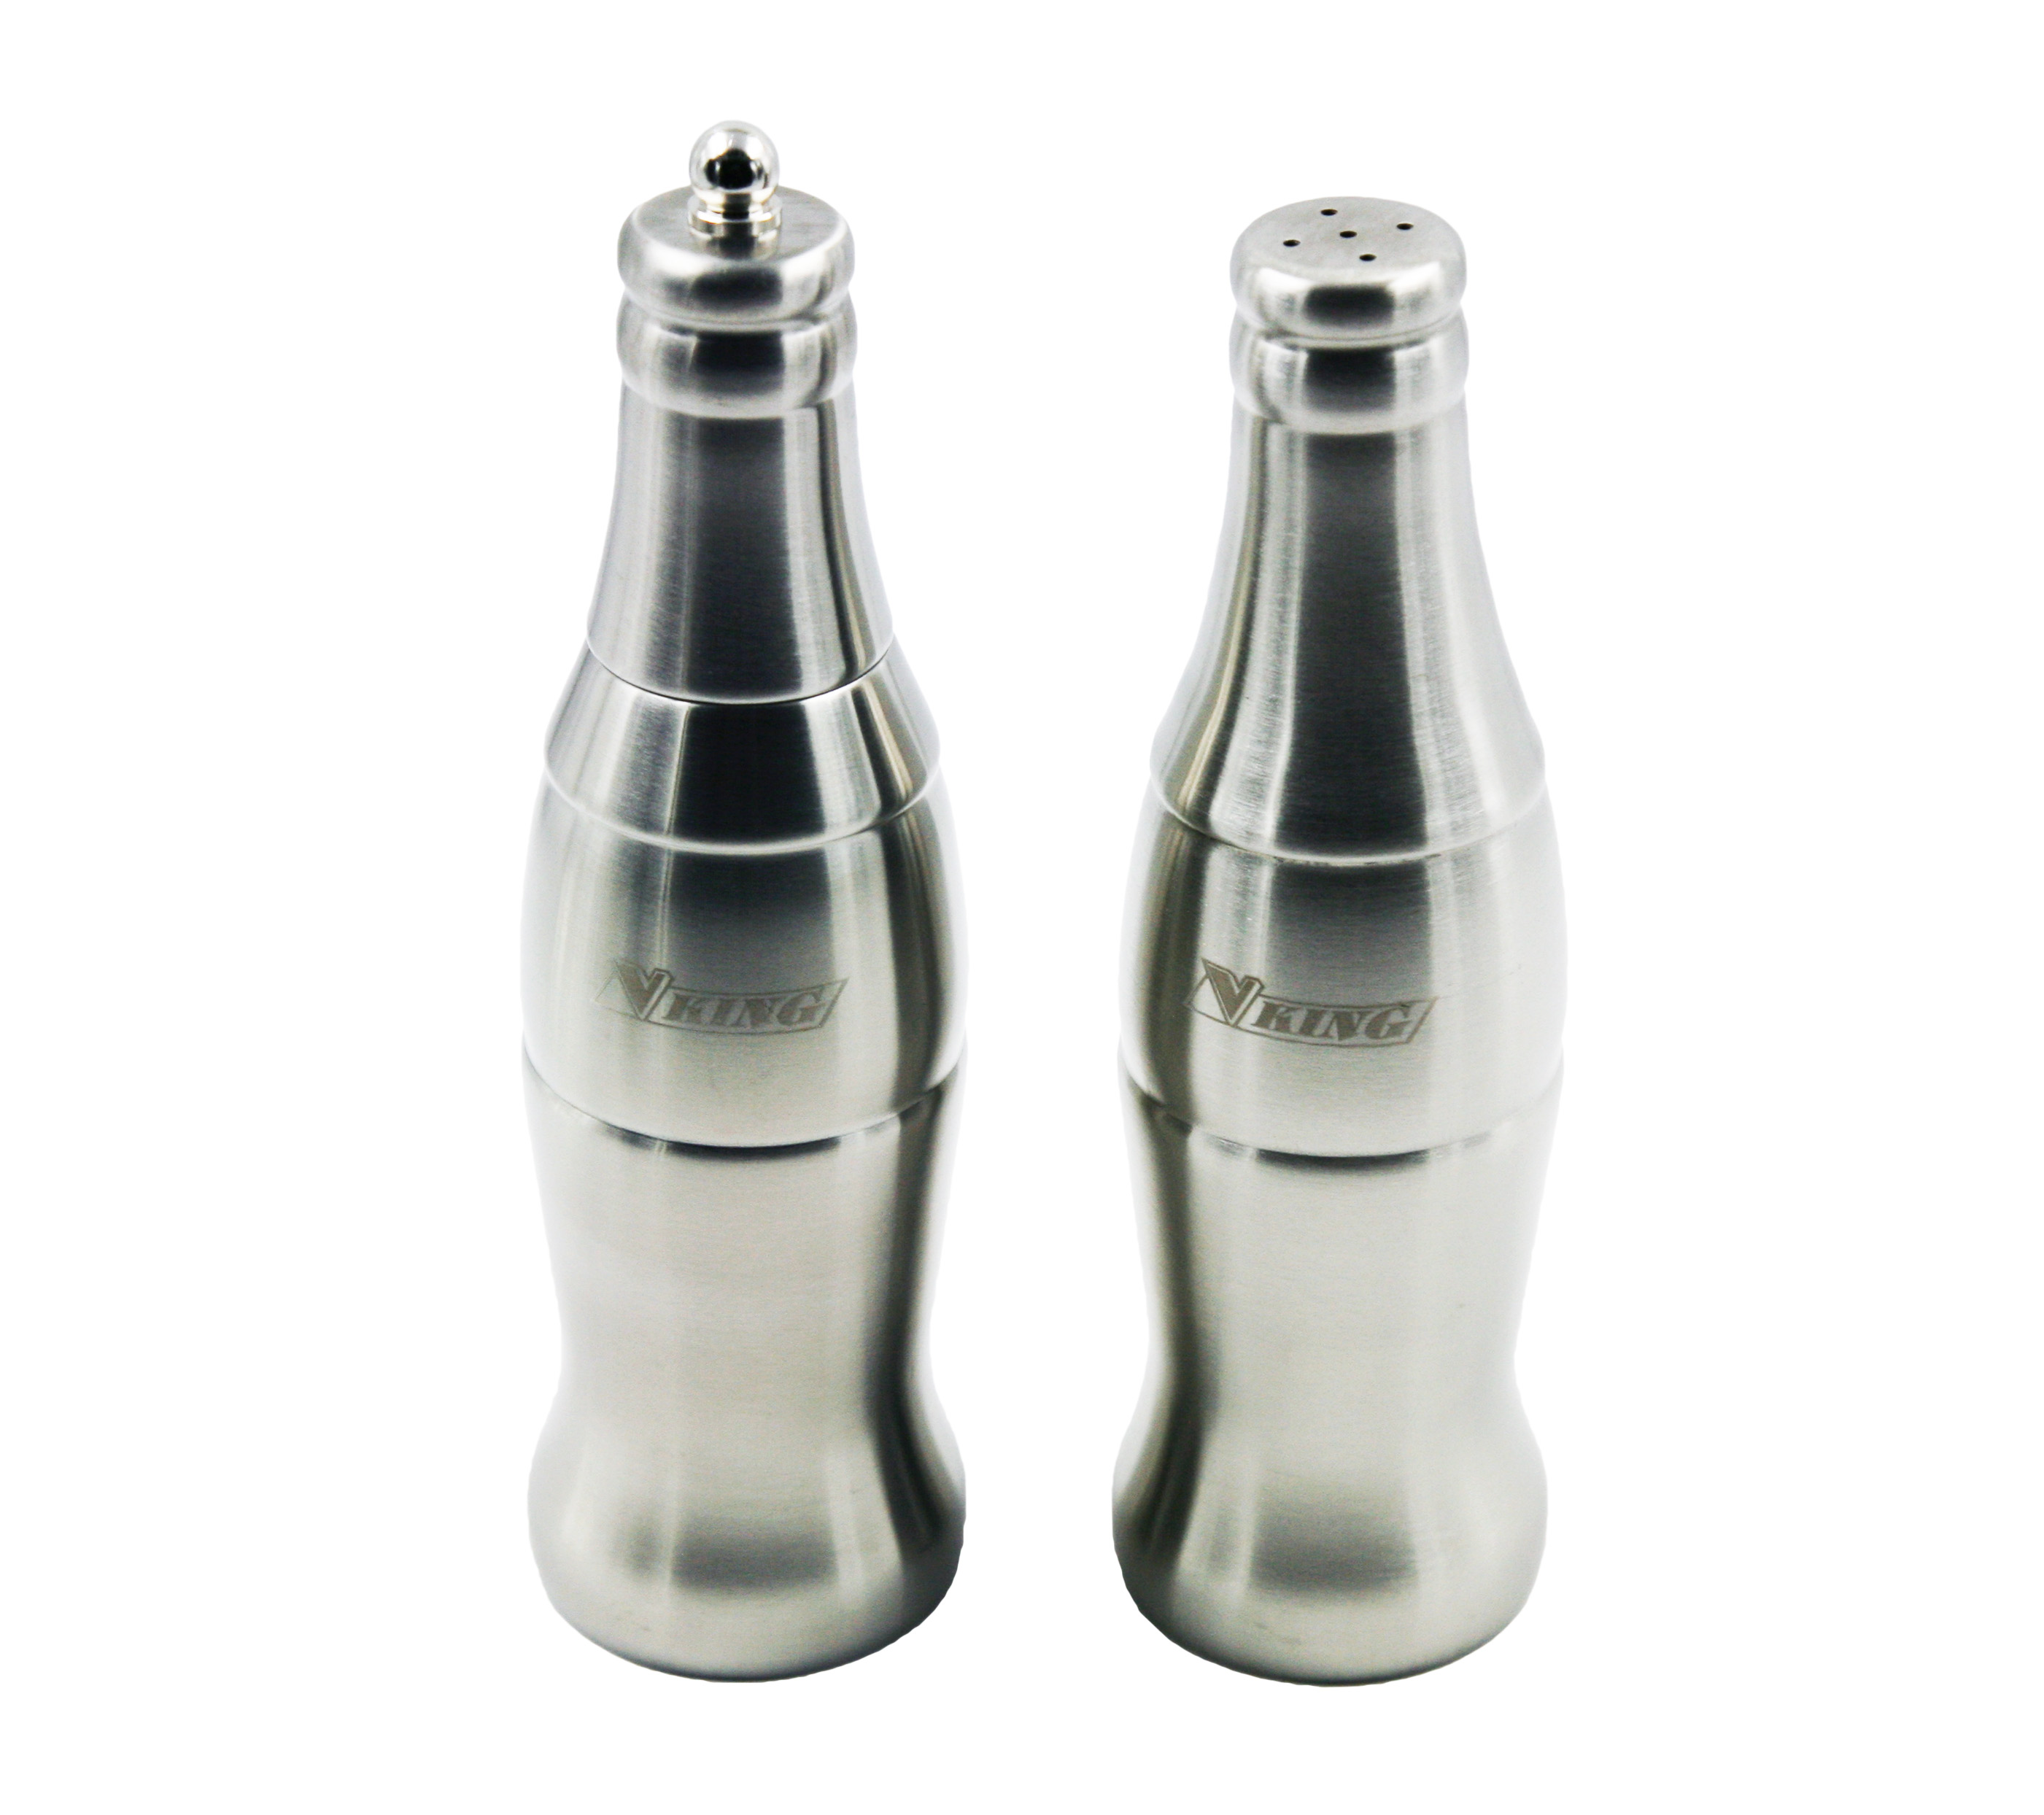 7.5インチのボトル形状ステンレススチールペッパーミル&ソルトシェーカーセット EB-SP74